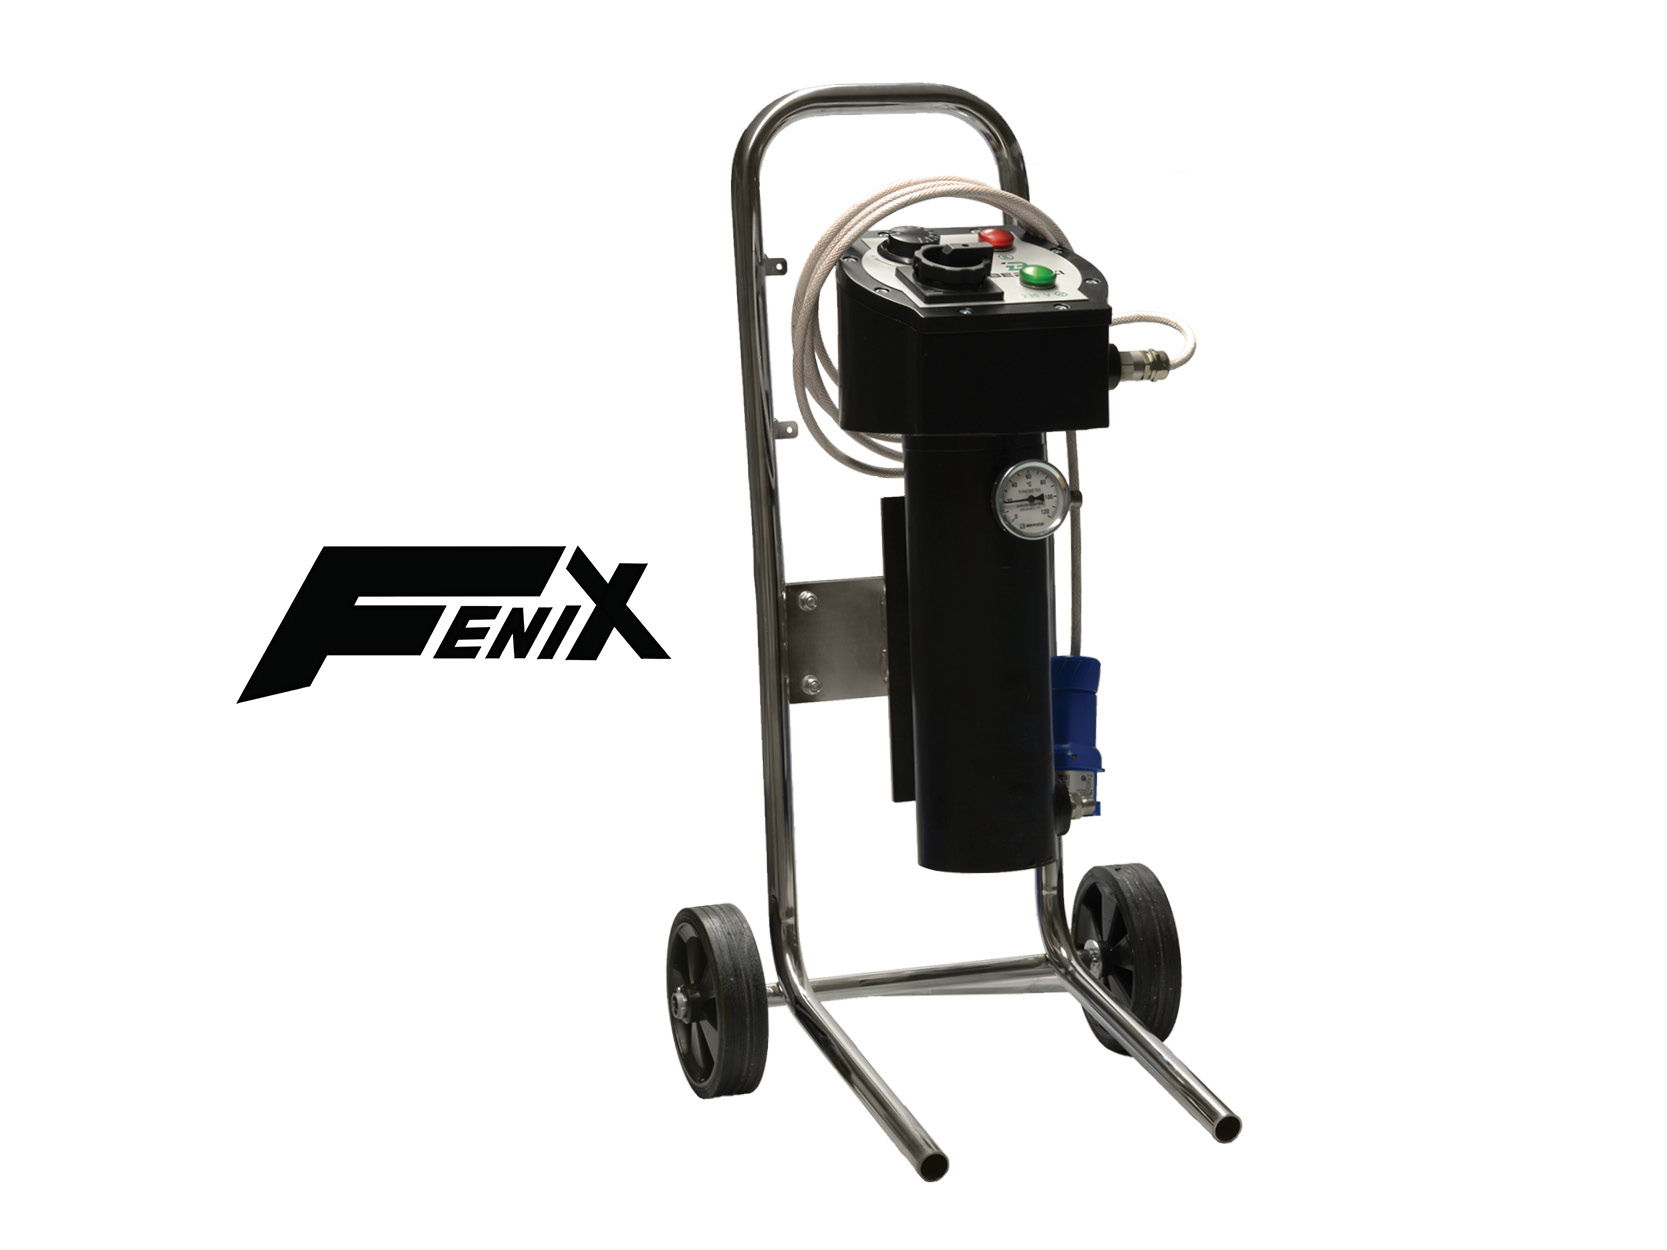 berizzi-Fenix-fluid-heater